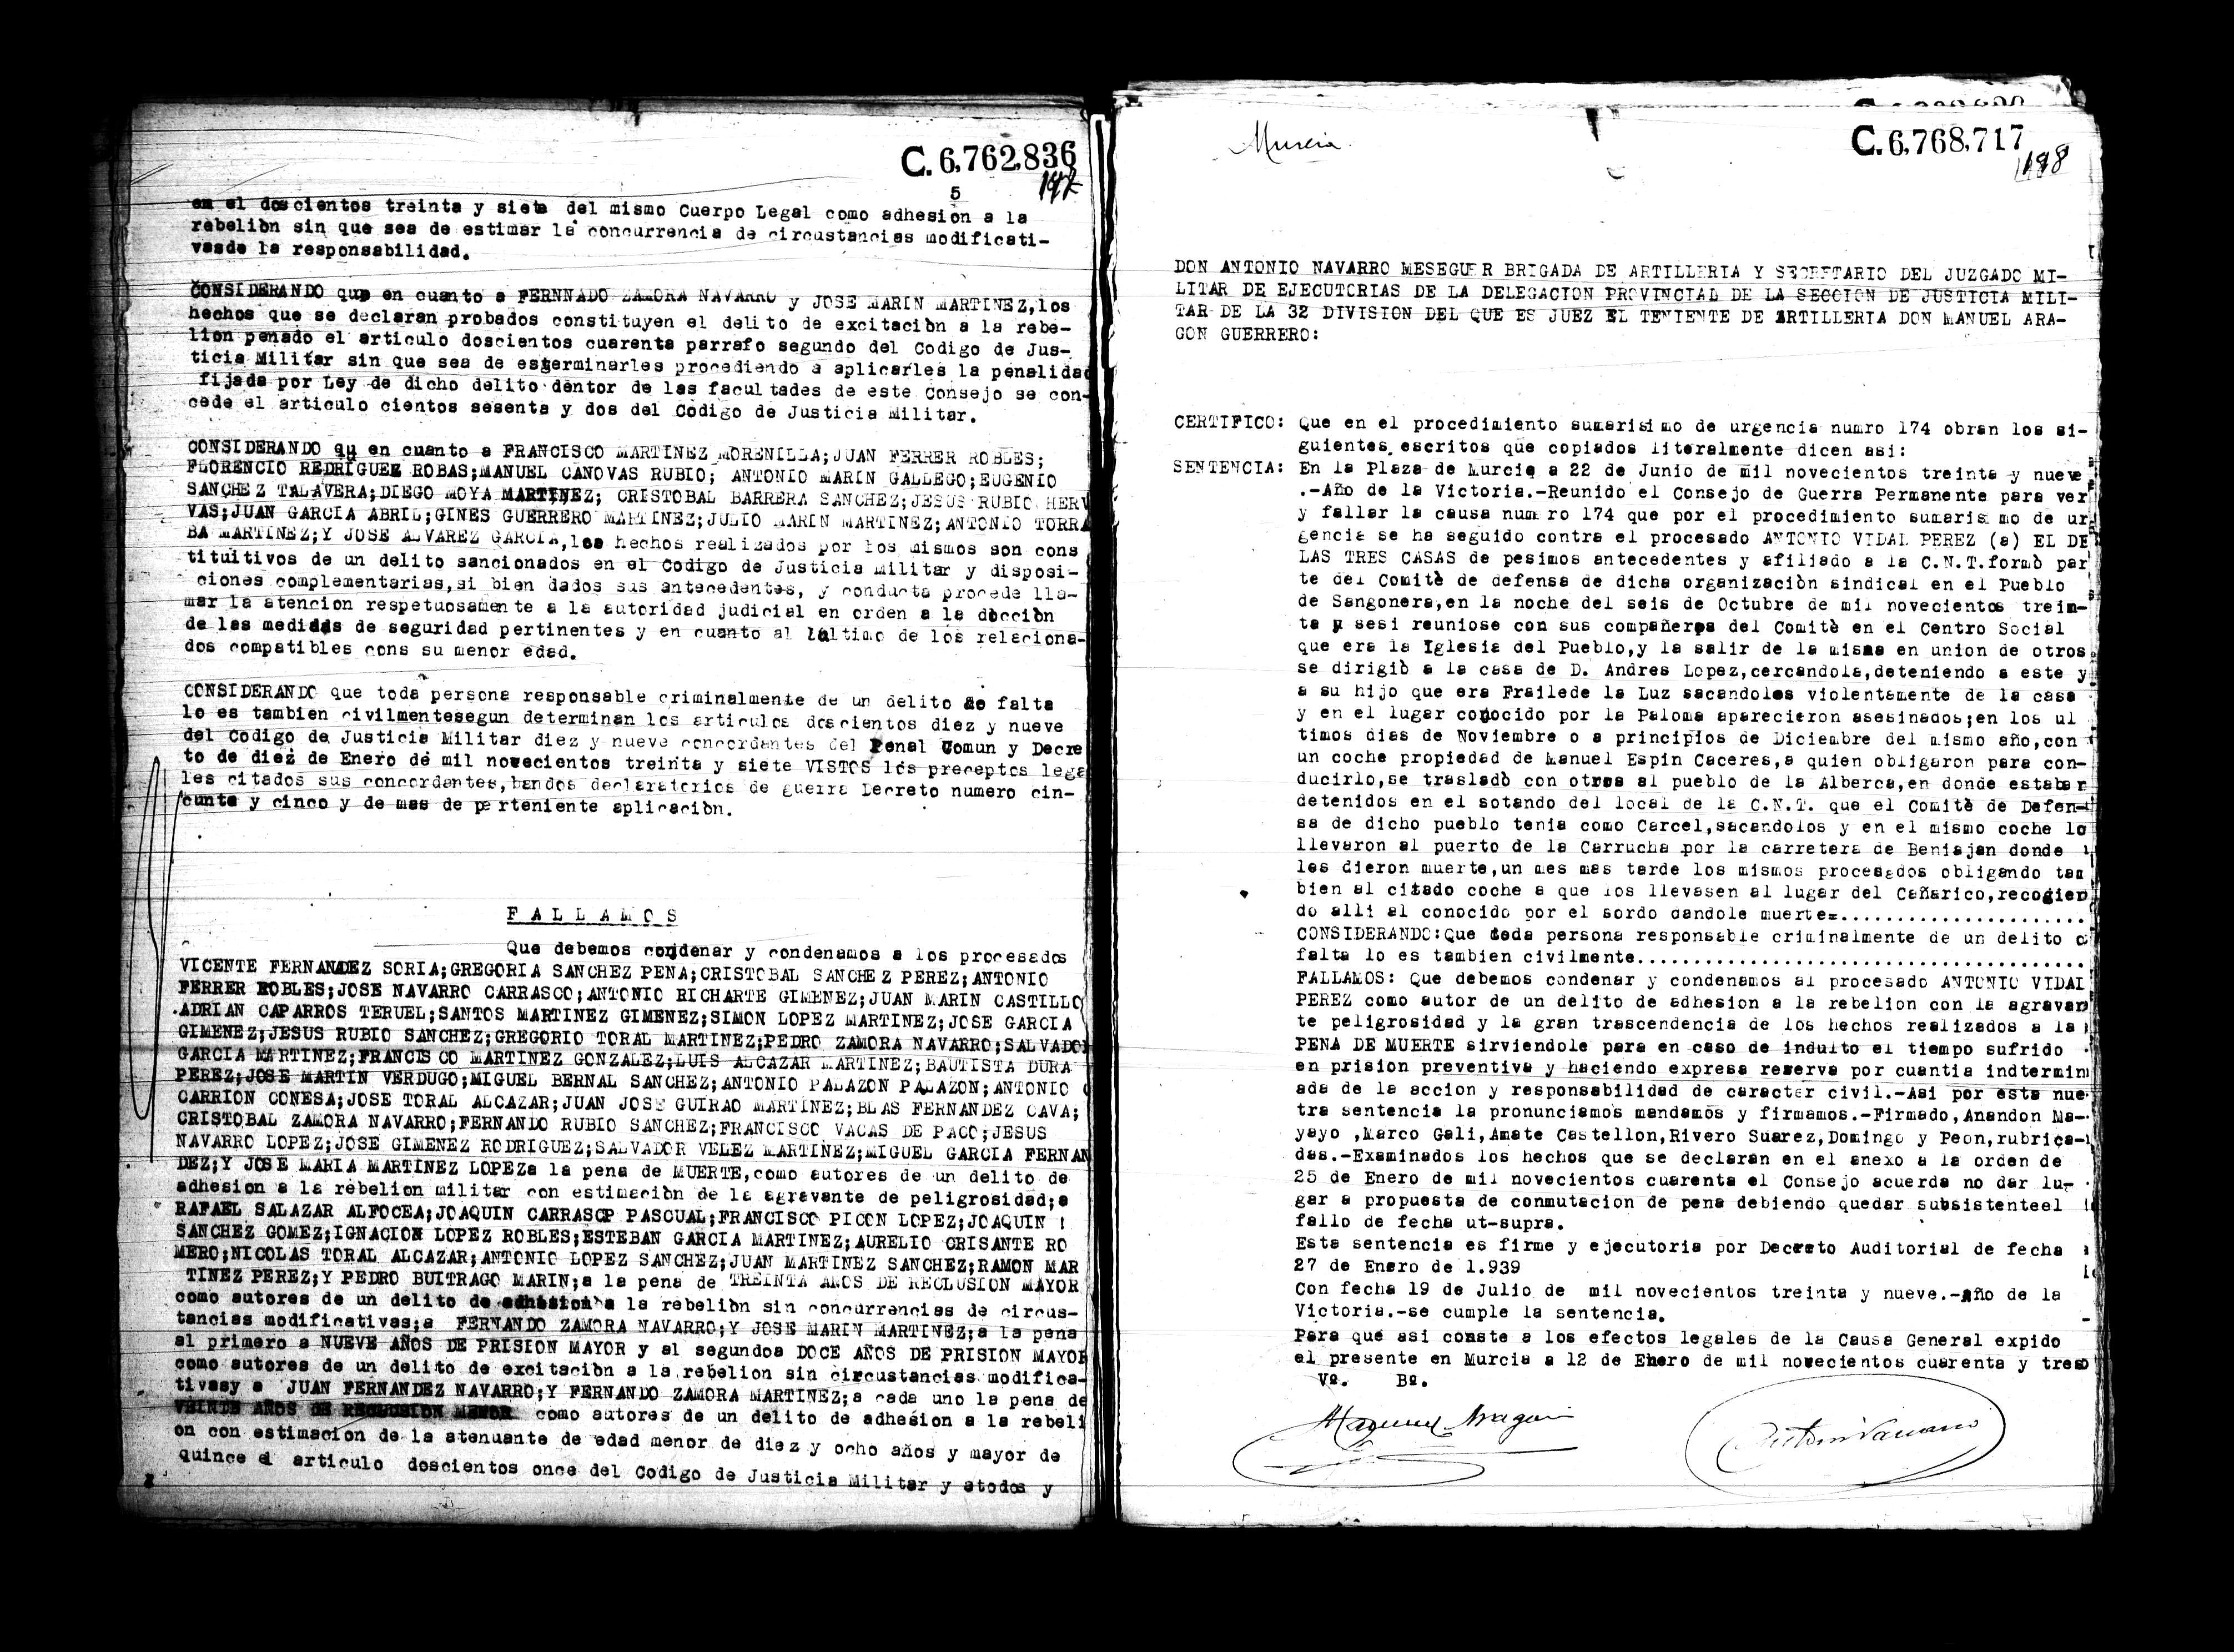 Certificado de la sentencia pronunciada contra Antonio Vidal Pérez, causa 174, el 22 de junio de 1939 en Murcia.